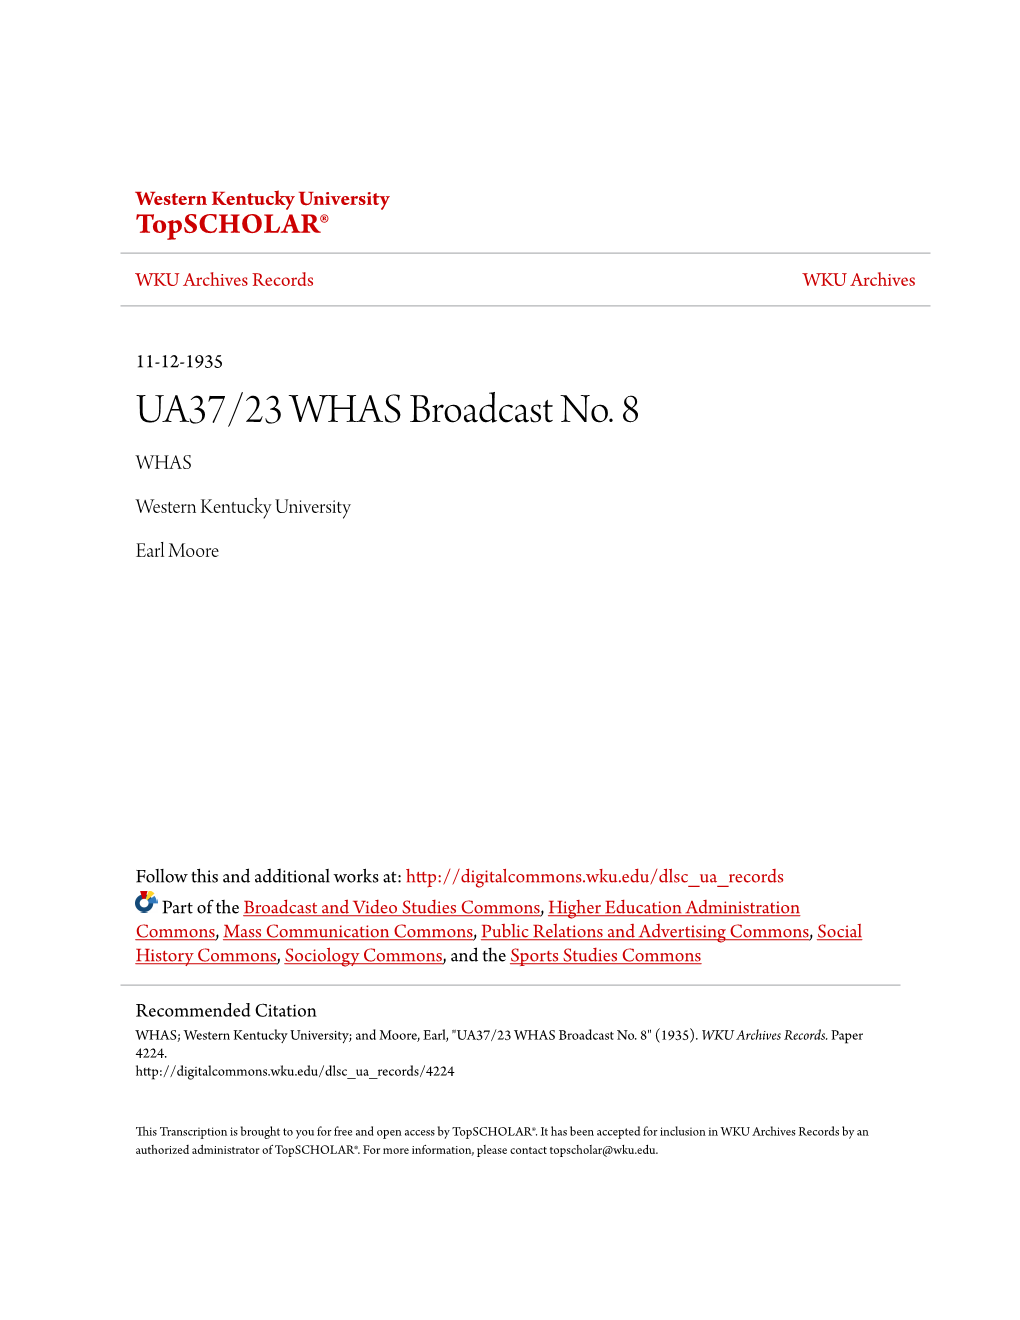 UA37/23 WHAS Broadcast No. 8 WHAS